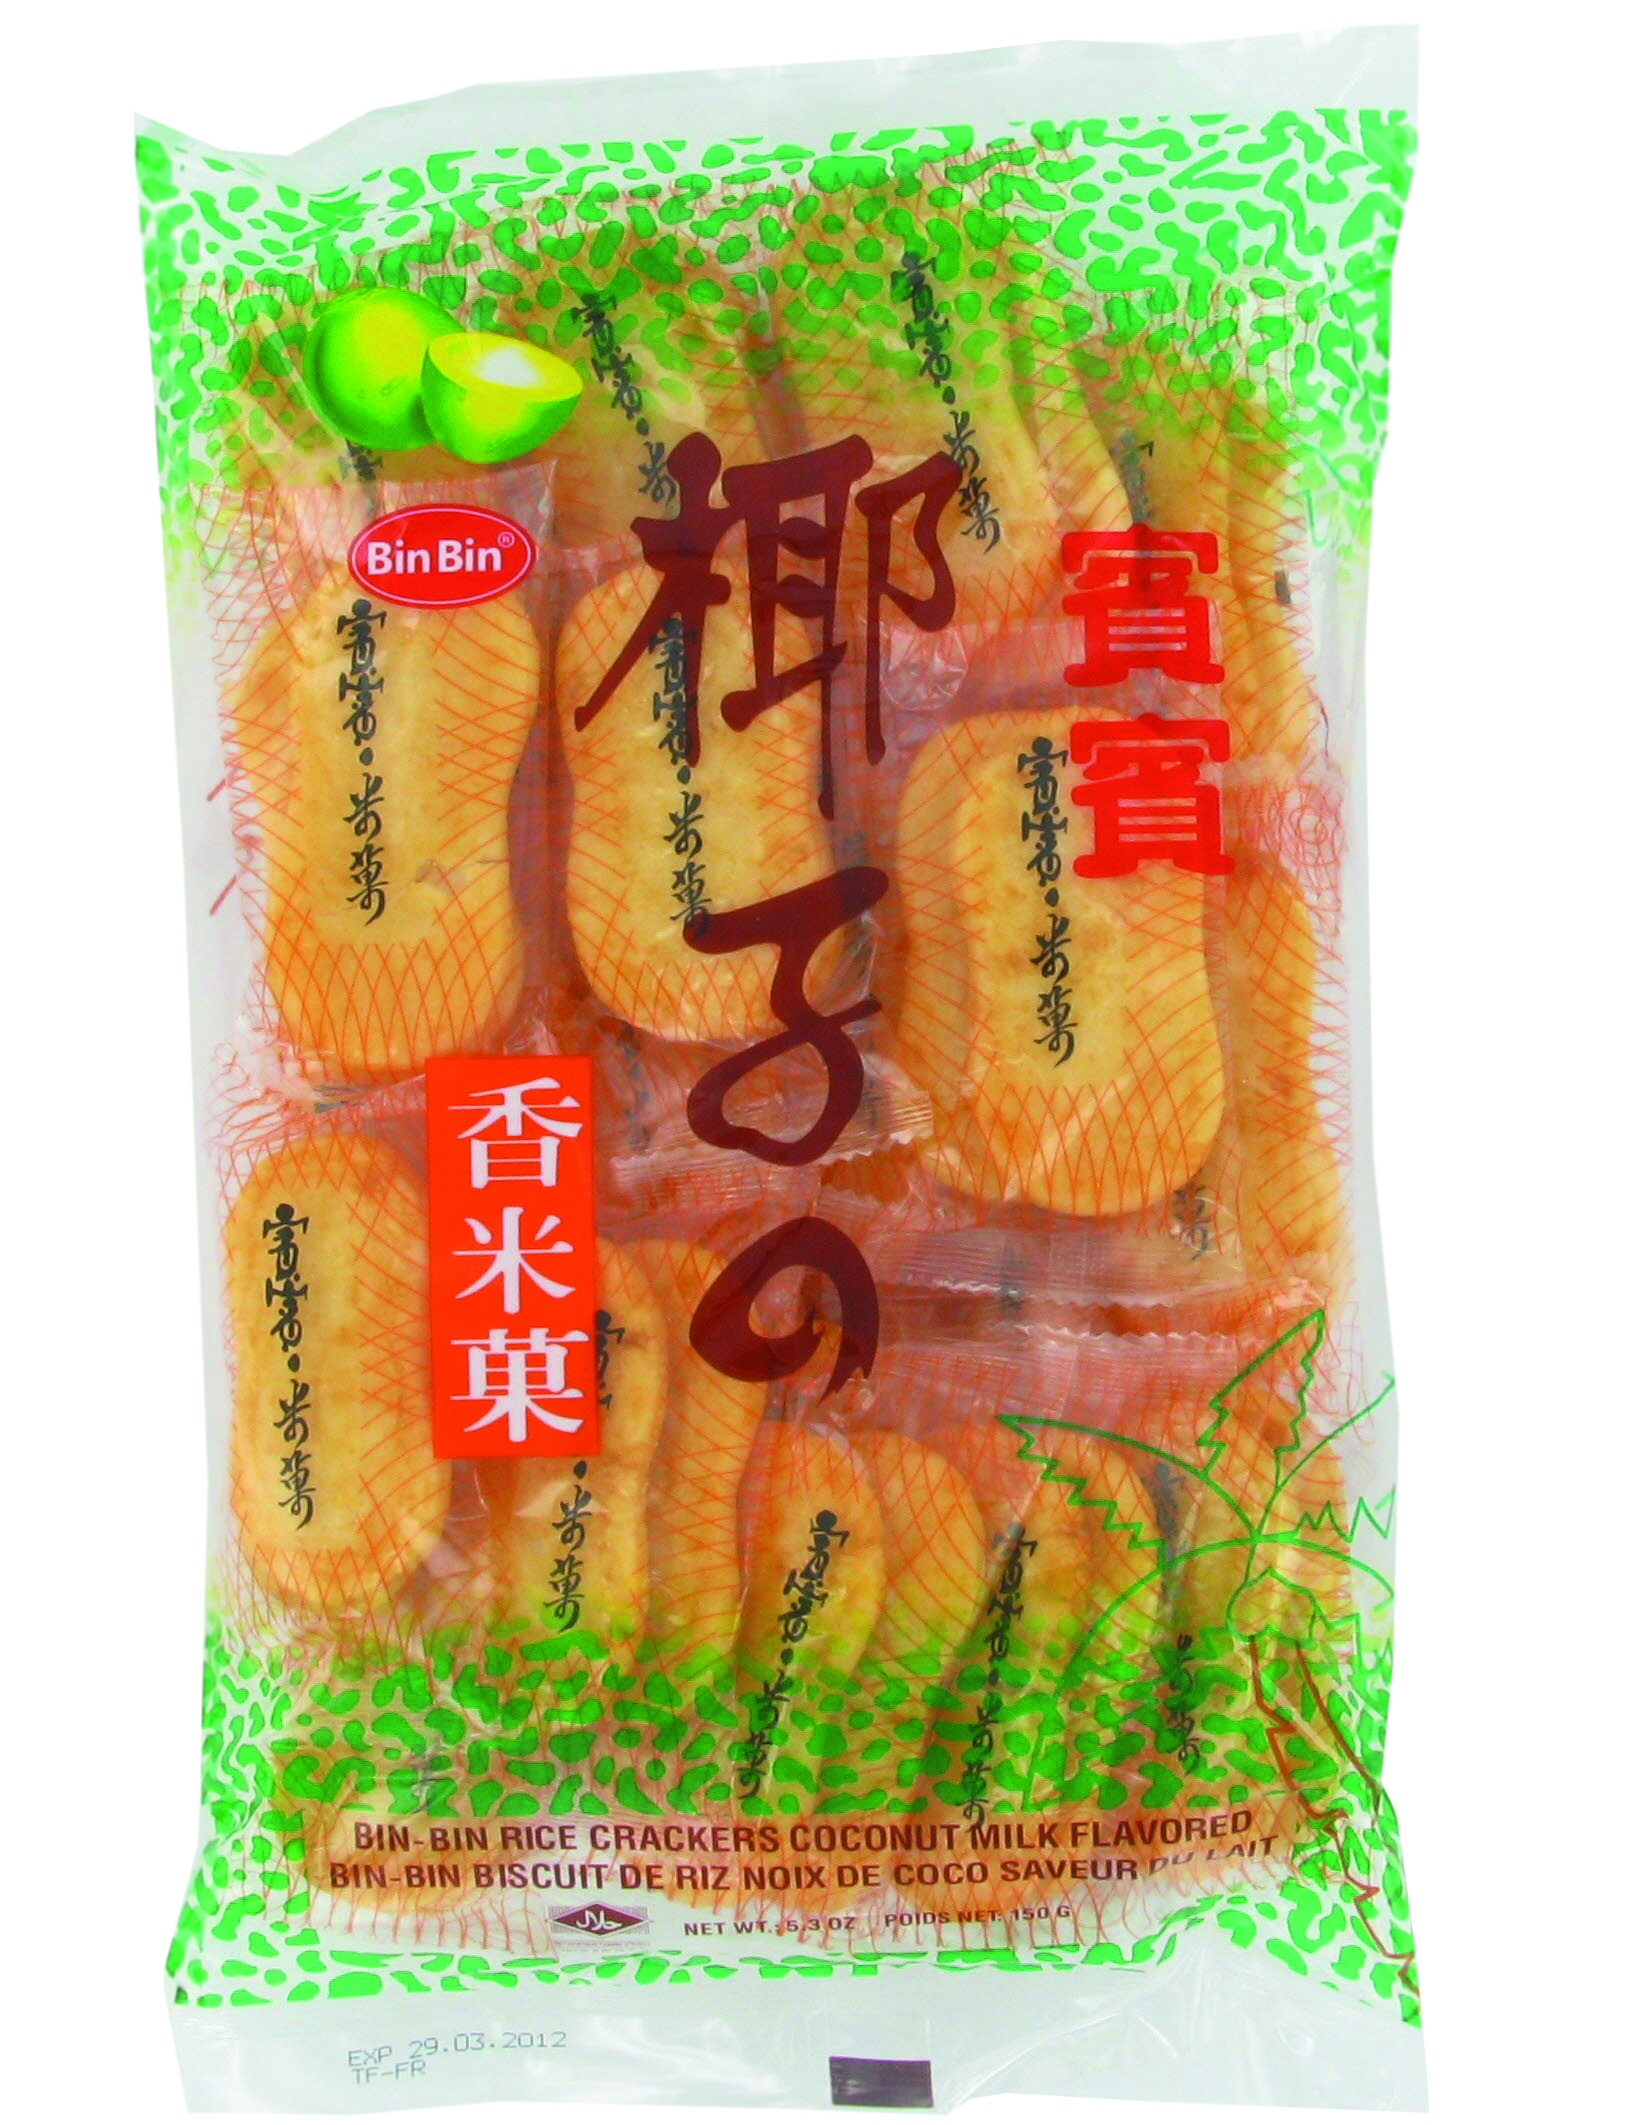 Gingembre confit (精制拳姜) COCK - Épicerie sucrée et salée, Snacks, Desserts -  Tang Frères